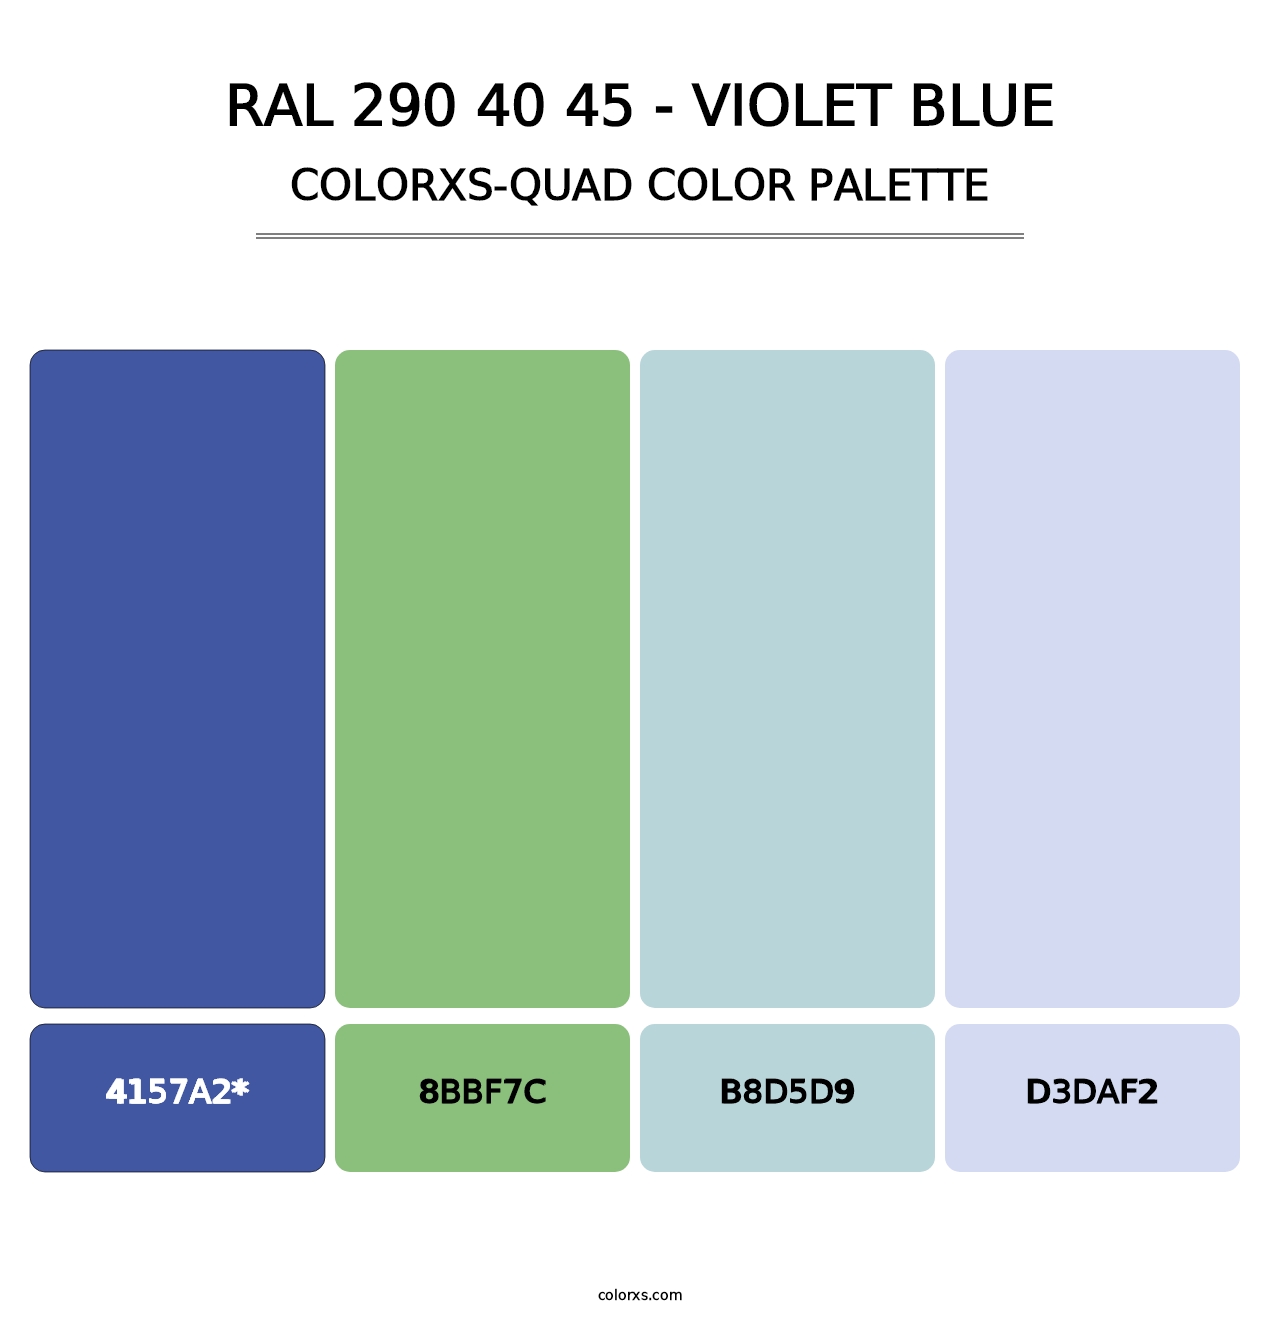 RAL 290 40 45 - Violet Blue - Colorxs Quad Palette